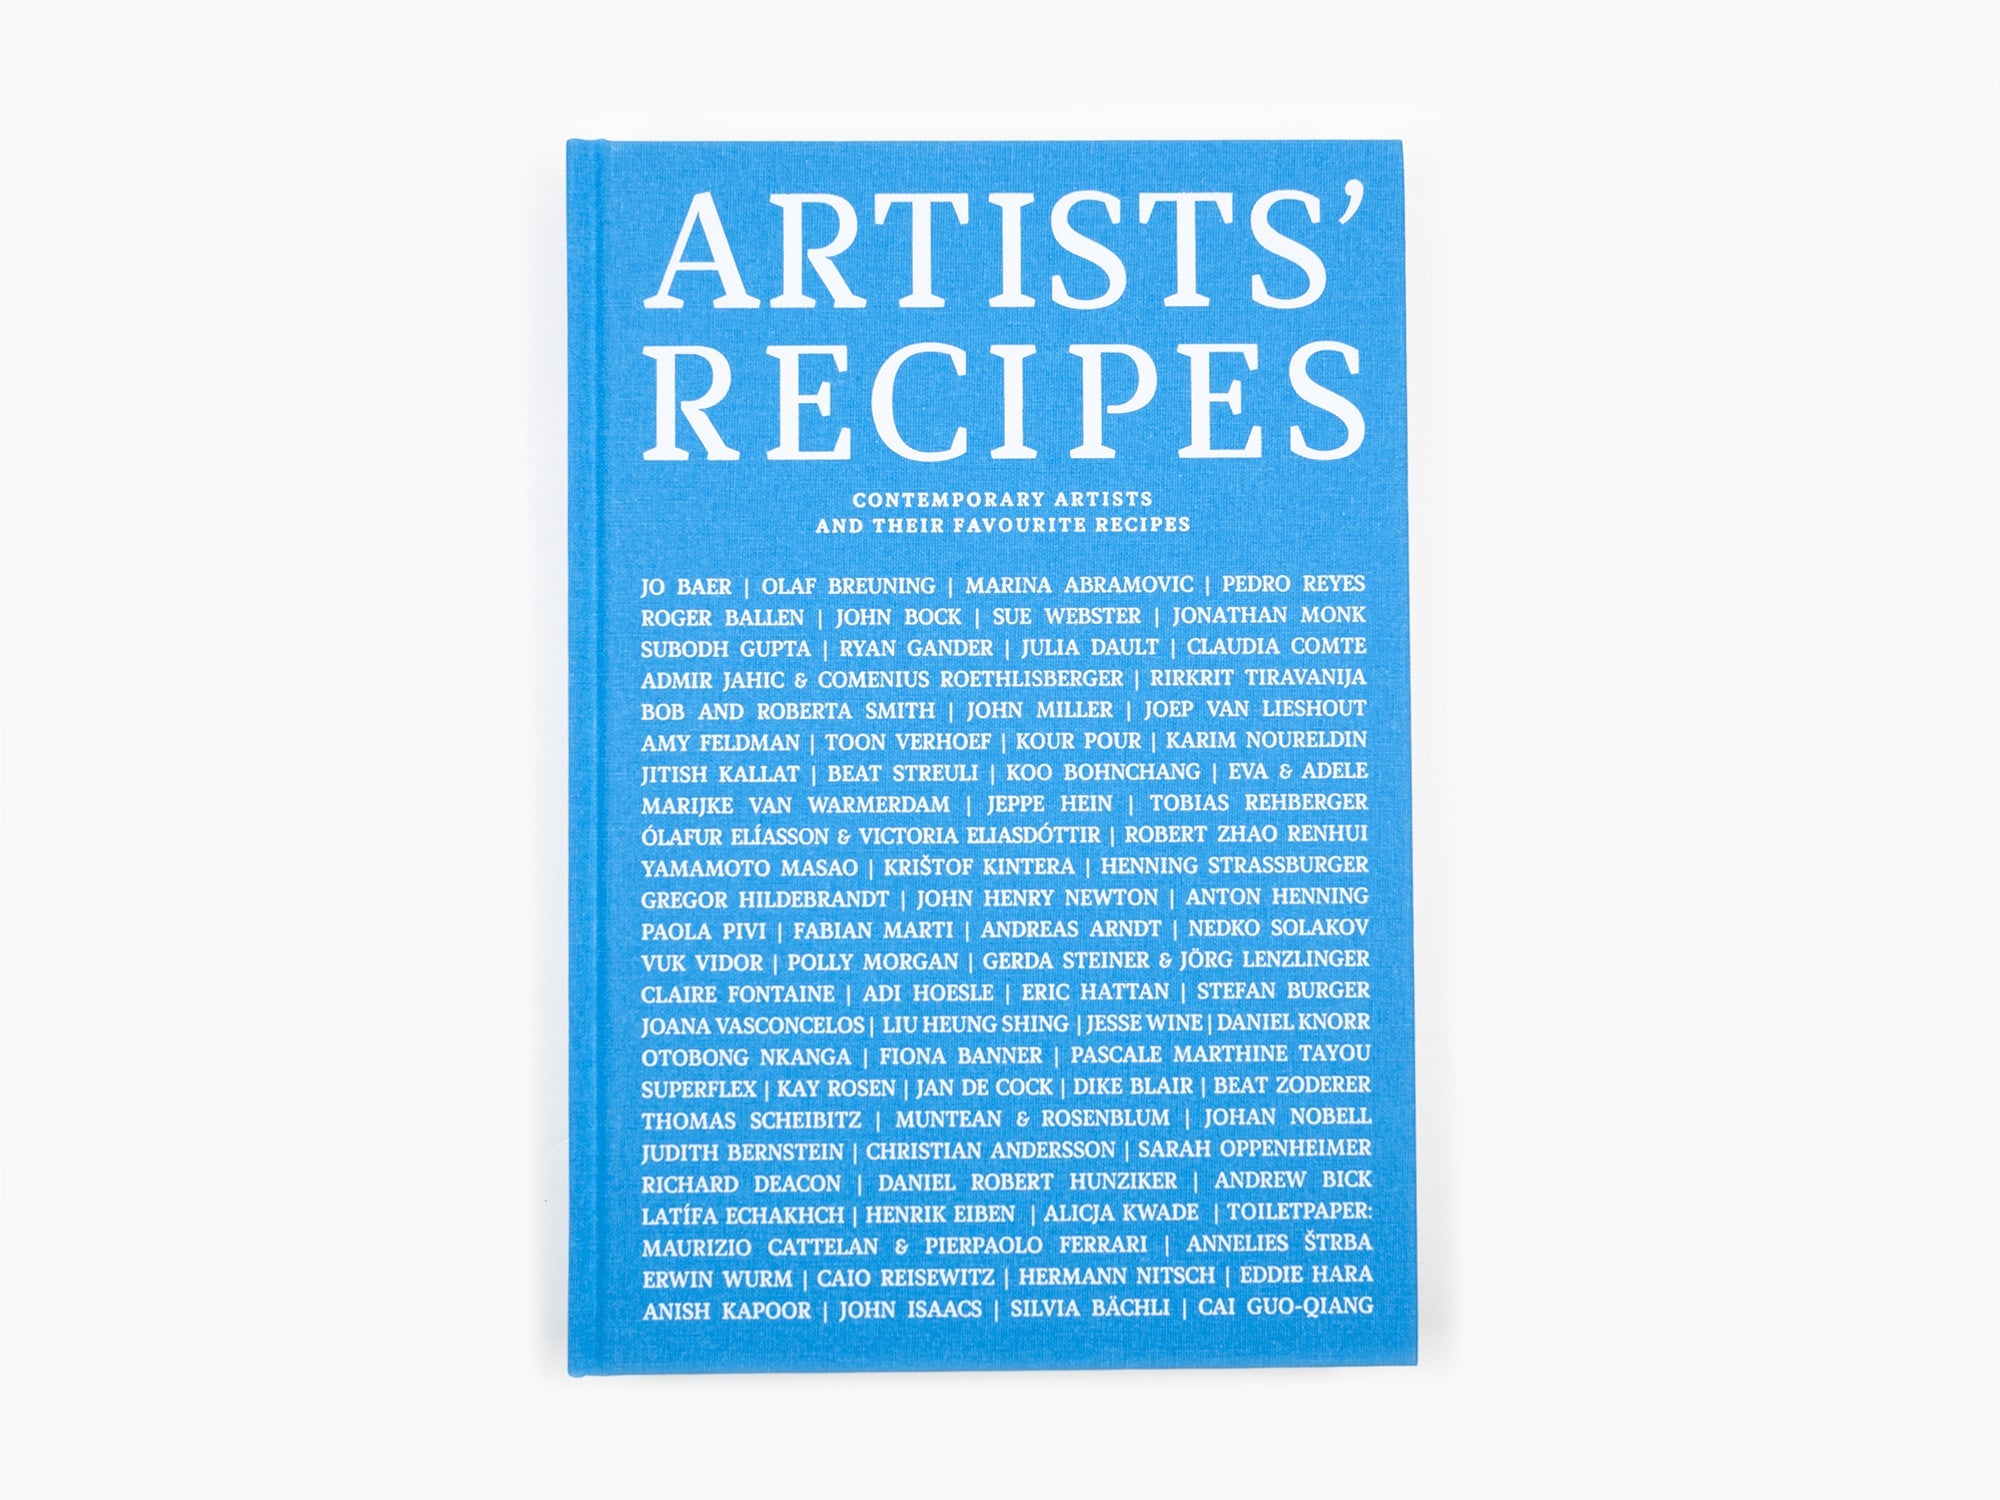 Recettes d'artistes - Les artistes contemporains et leurs recettes préférées